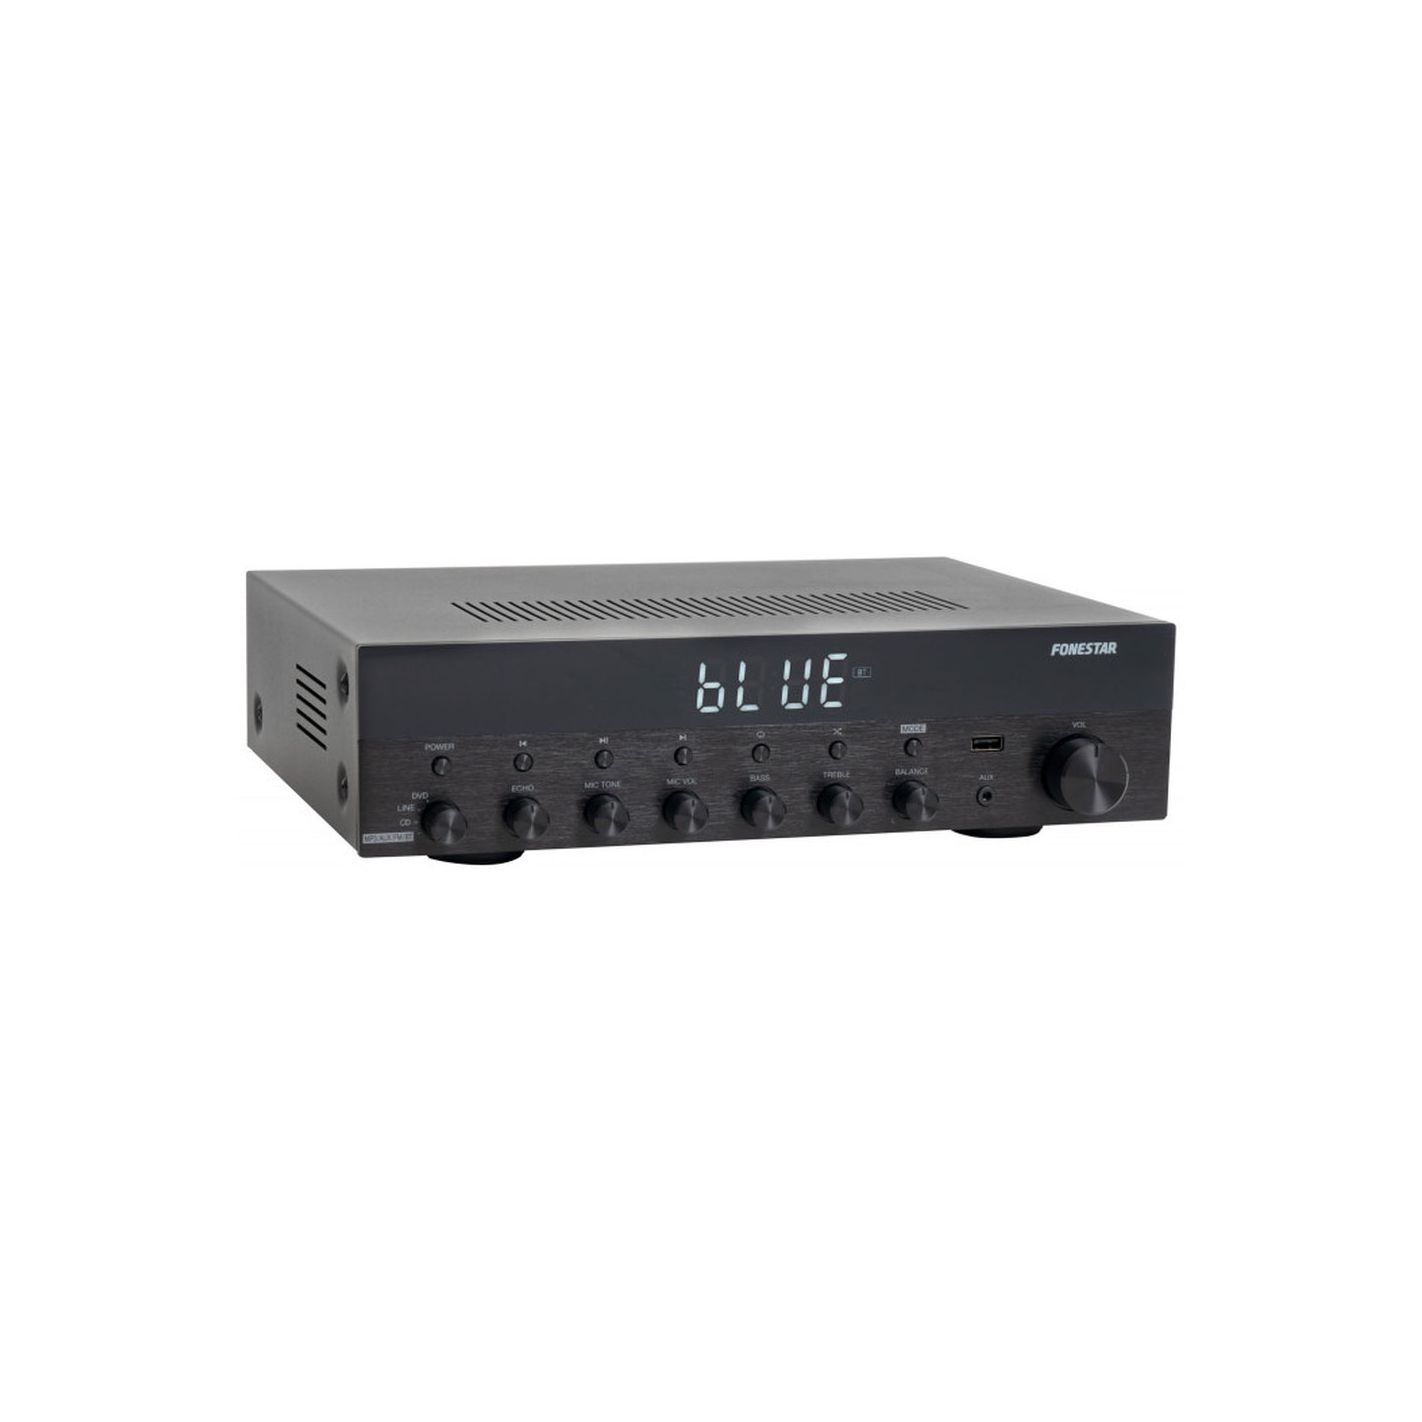 Amplificadores de voz - FONESTAR ALTA-VOZ-30 Black / Amplificador